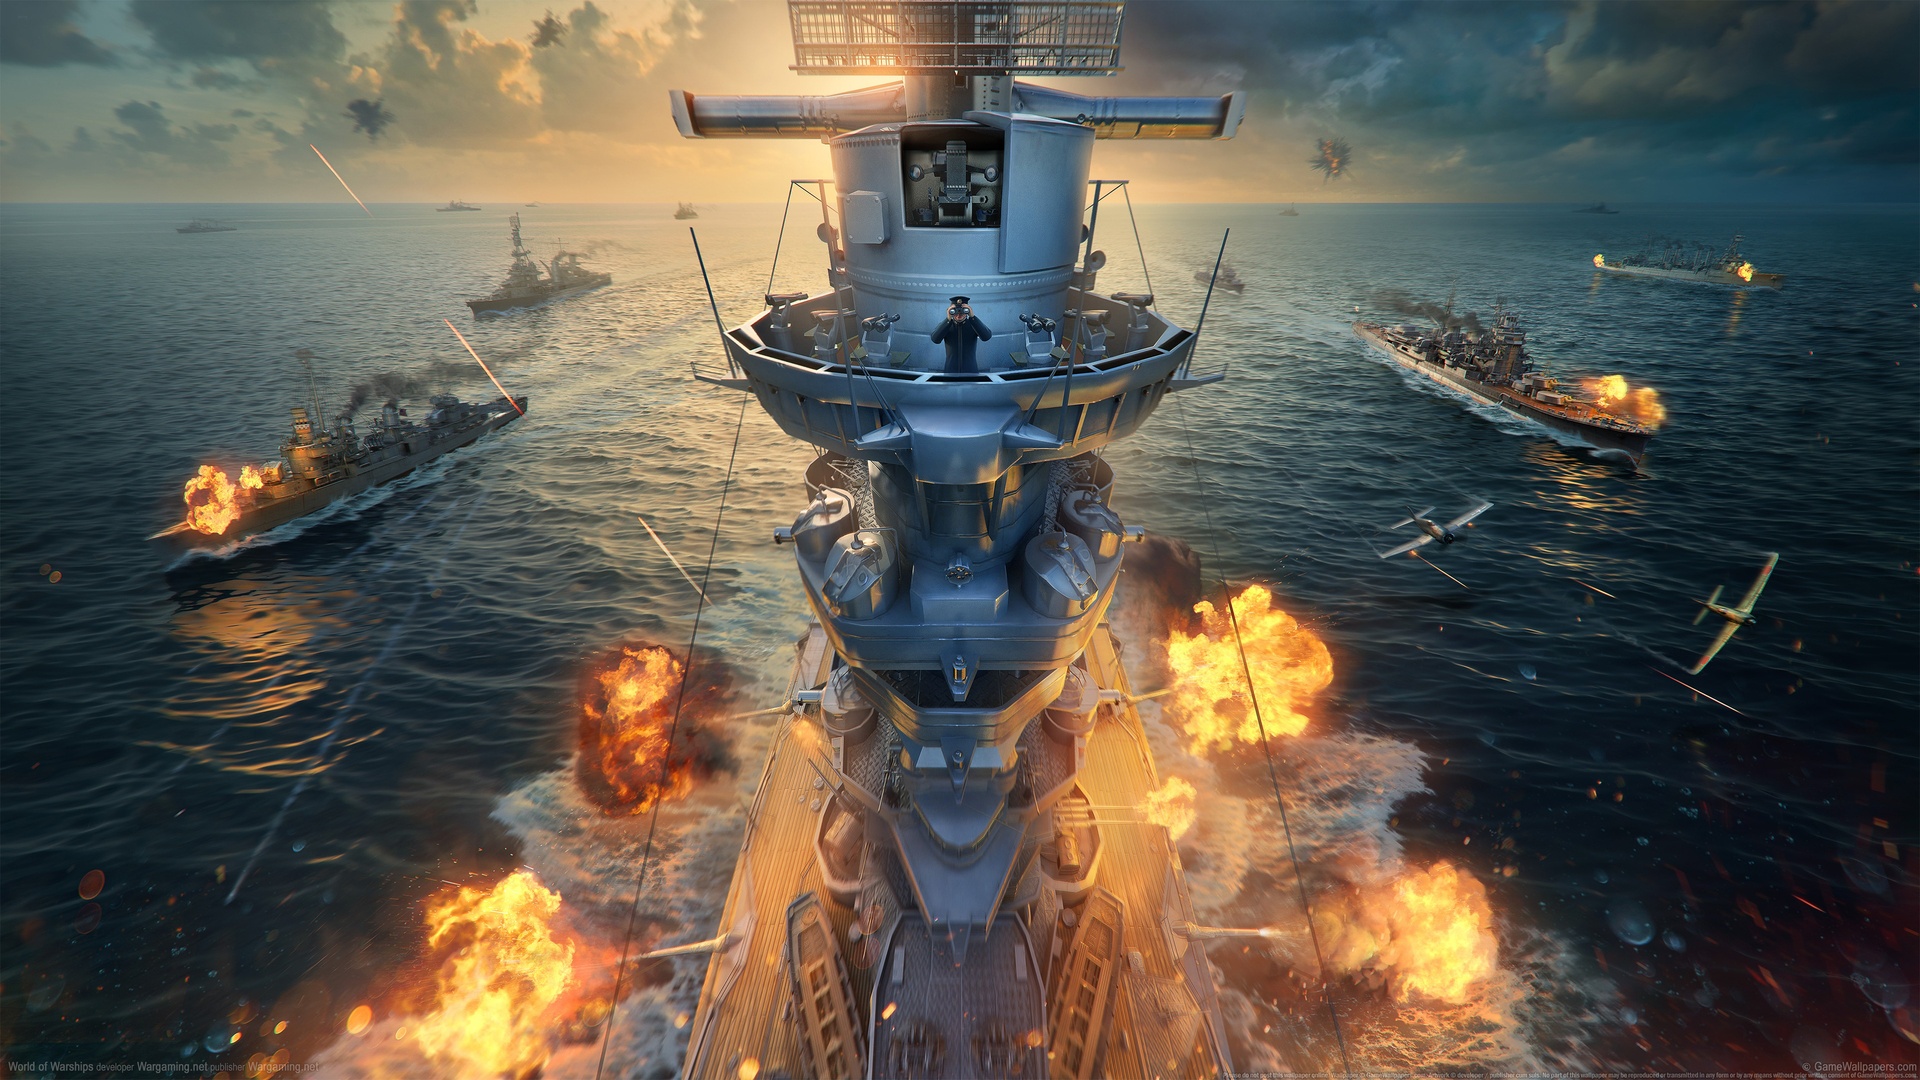 战舰世界 大海 船 游戏原画4k壁纸壁纸游戏壁纸>  下载高清原图  安装